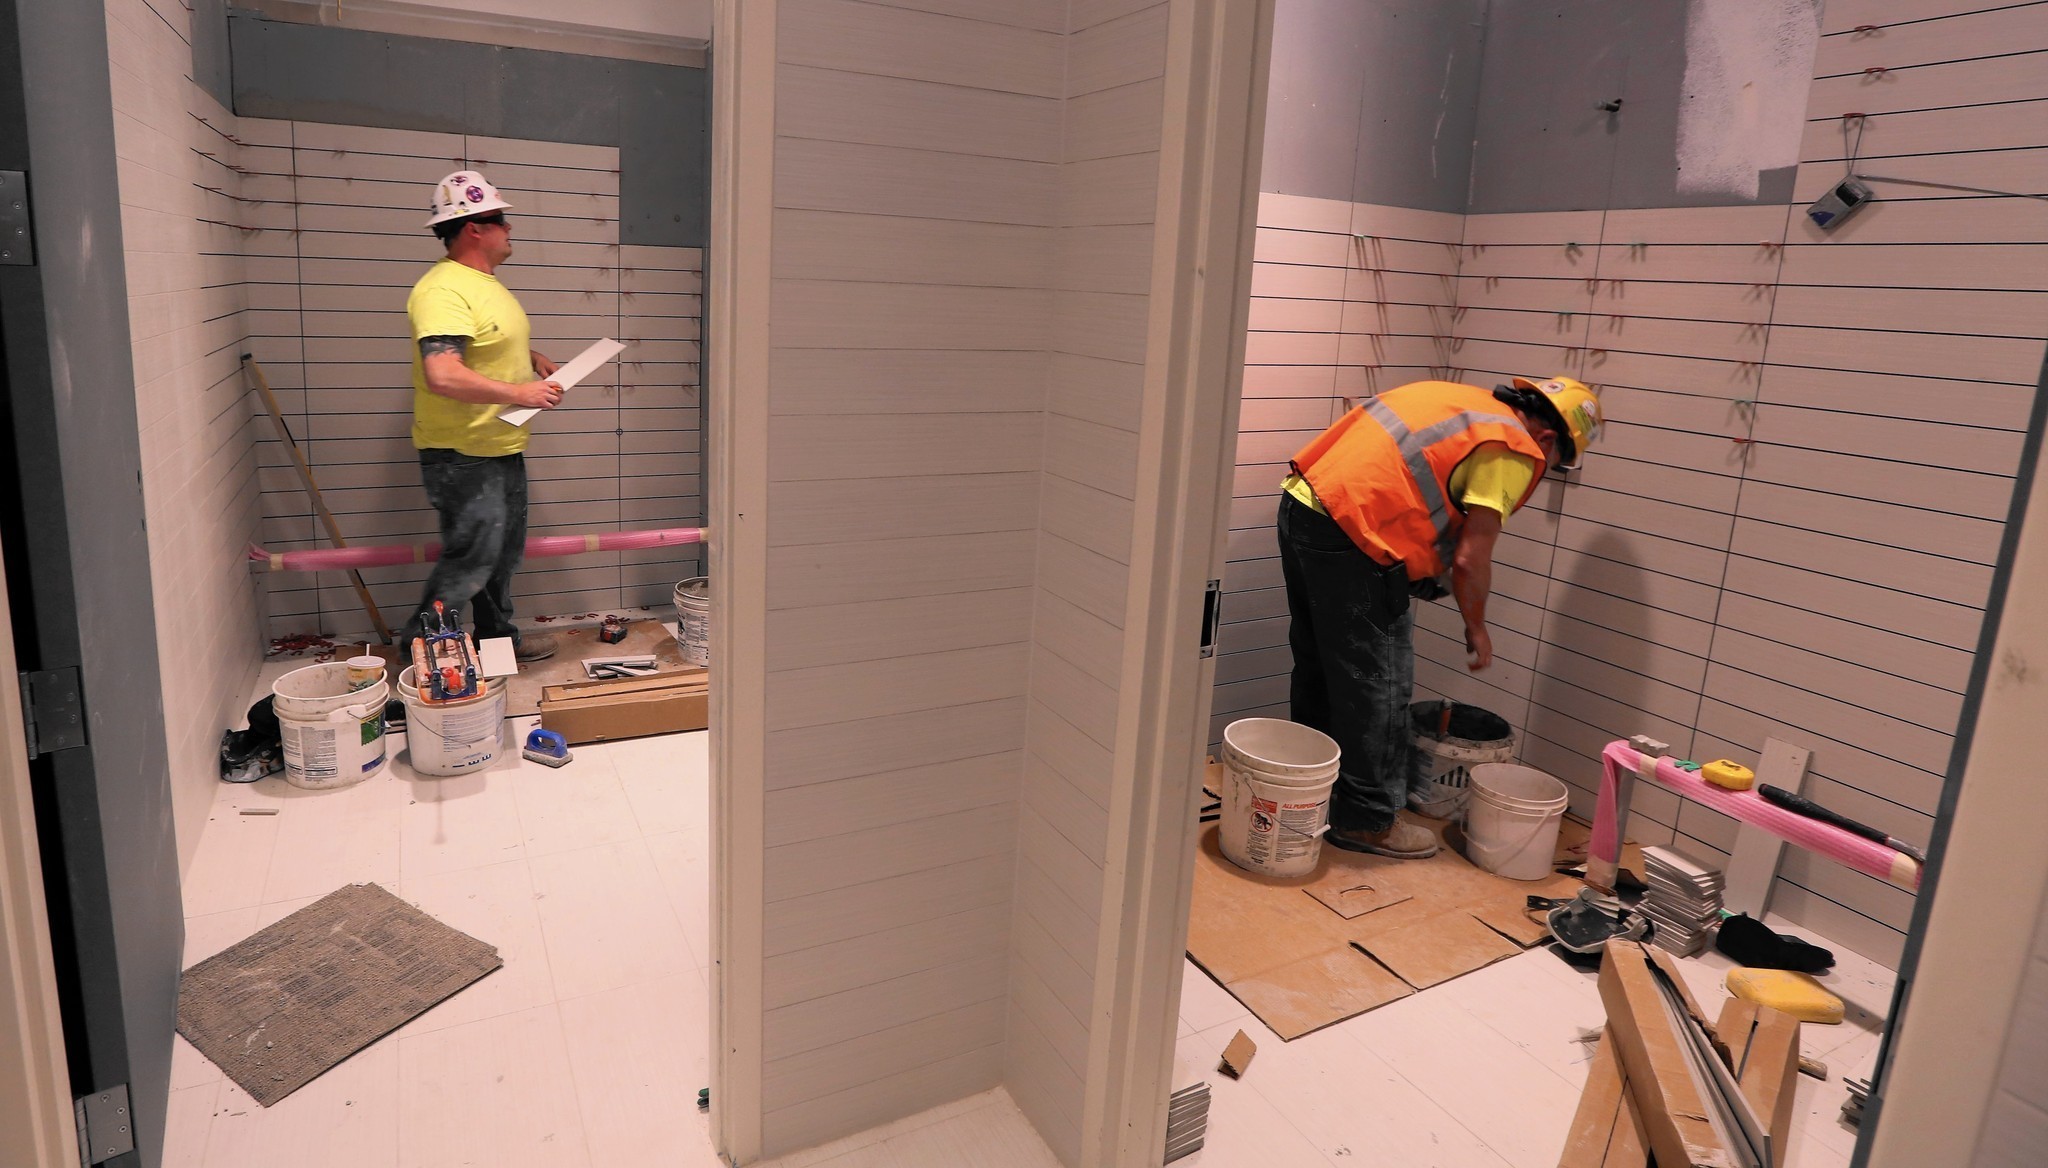 Construction Contractors Warn Of A Labor Shortage As Building Booms Chicago Tribune